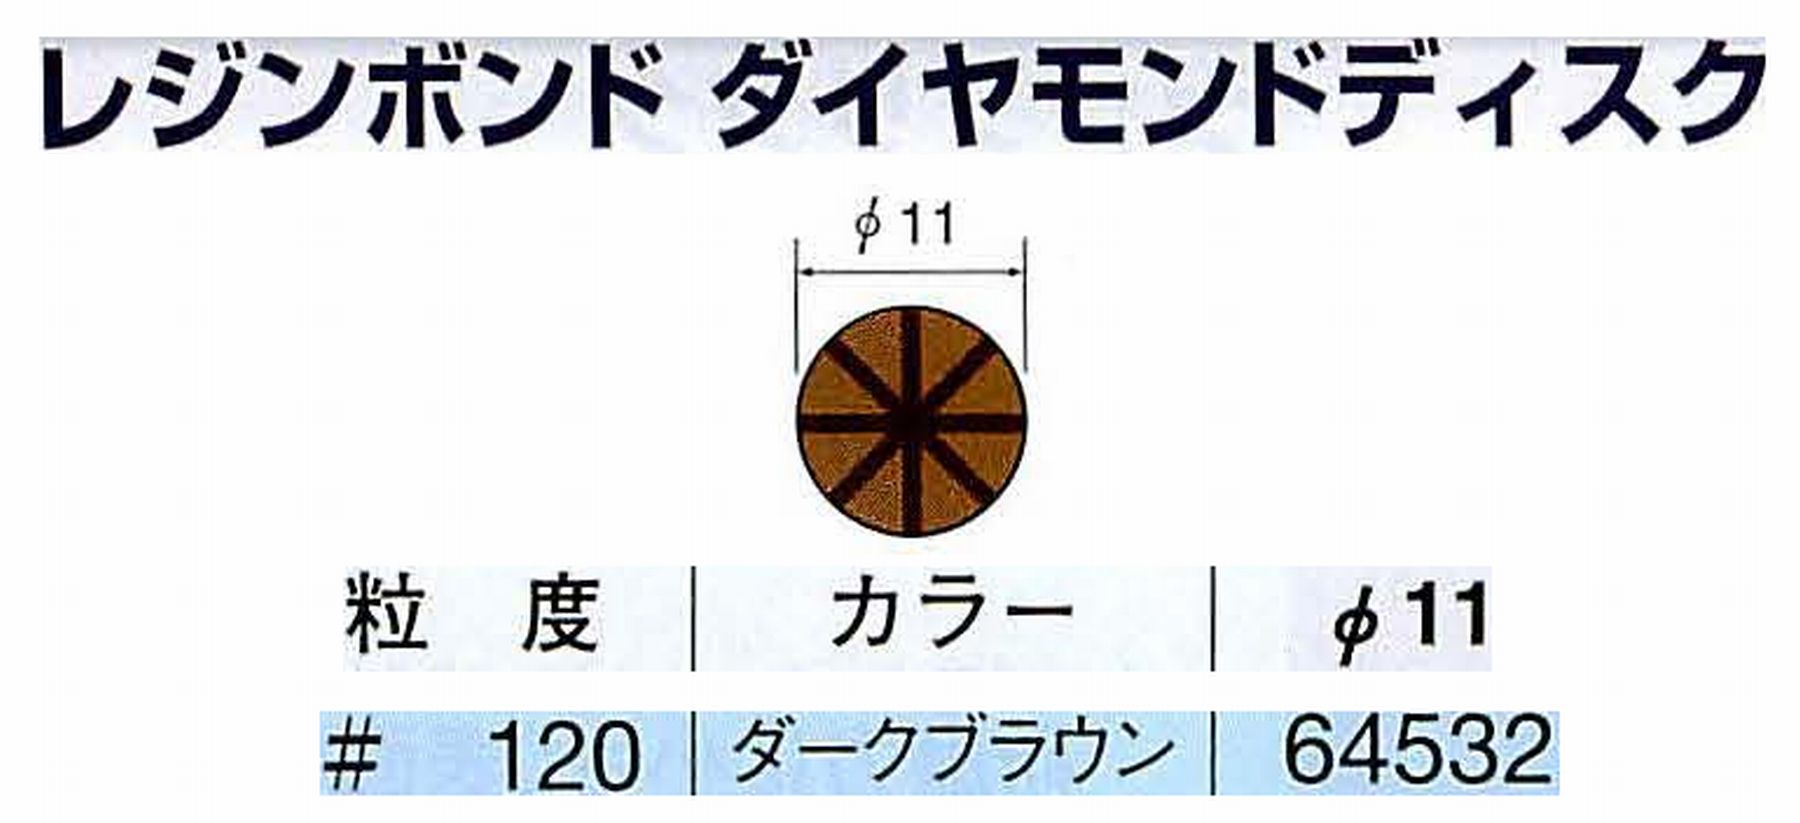 ナカニシ/NAKANISHI アングルグラインダ(電動・エアー) アングルアタッチメント専用工具 レジンボンド ダイヤモンドディスク(パターンタイプ) 64532